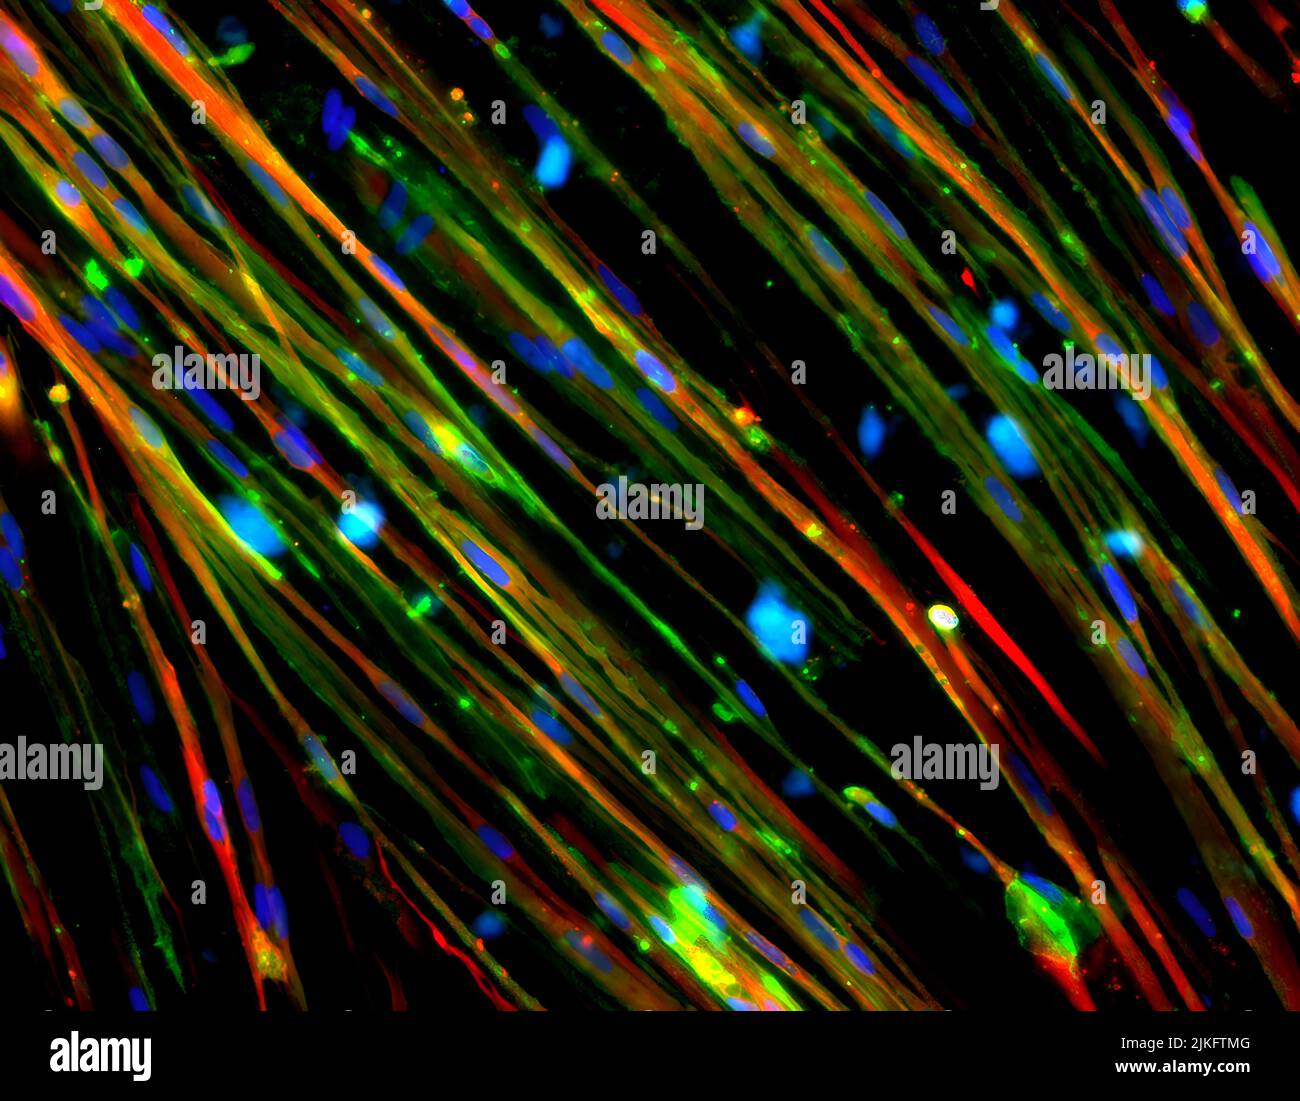 Questa immagine mostra il ripristino della distrofina (verde colorato) nelle cellule muscolari della distrofia muscolare di Duchenne (DMD) derivate da cellule staminali pluripotenti indotte dall'uomo. La DMD è causata da mutazioni nel gene della DMD che influenzano la produzione di distrofina, una proteina coinvolta nella struttura della membrana delle cellule muscolari. I ricercatori hanno utilizzato la tecnologia di editing genico CRISPR/Cas9 per correggere una mutazione, con conseguente ripristino della distrofina. Questa tecnologia potrebbe essere terapeutica fino al 60% delle mutazioni dei pazienti con DMD. I nuclei delle cellule muscolari sono colorati di blu e la proteina contrattile miosina è colorata di rosso. Foto Stock